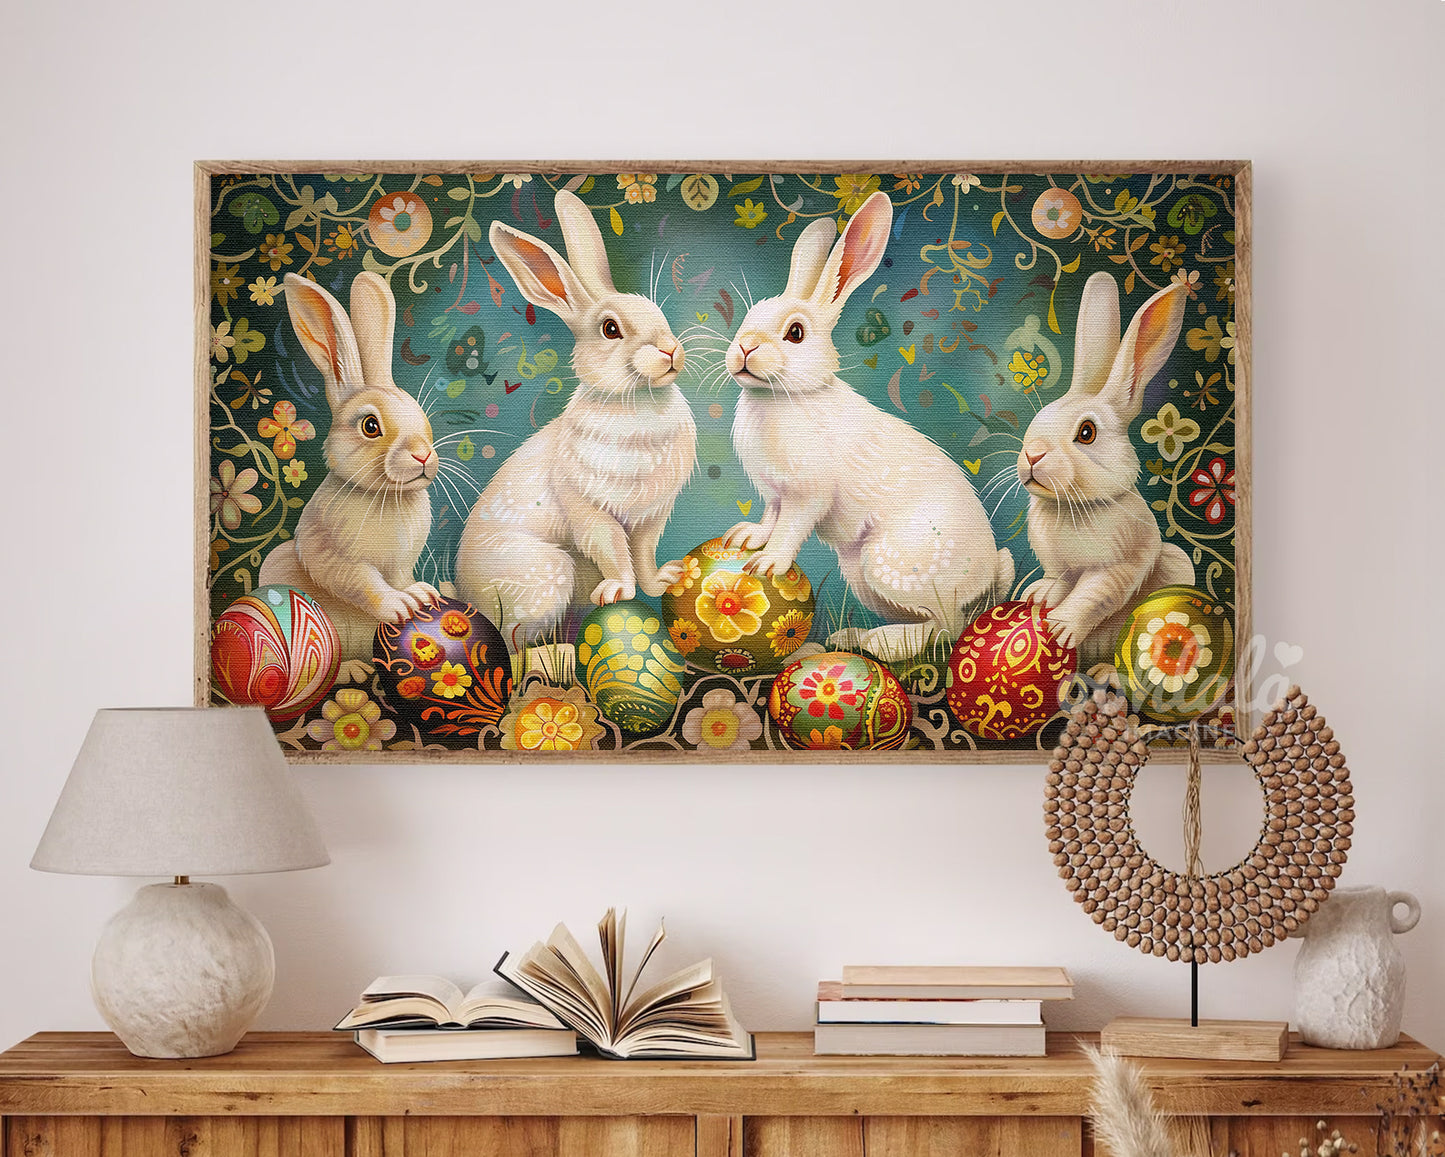 Artistic Easter Bunny Easter Egg Frame TV Wallpaper for Easter Decor